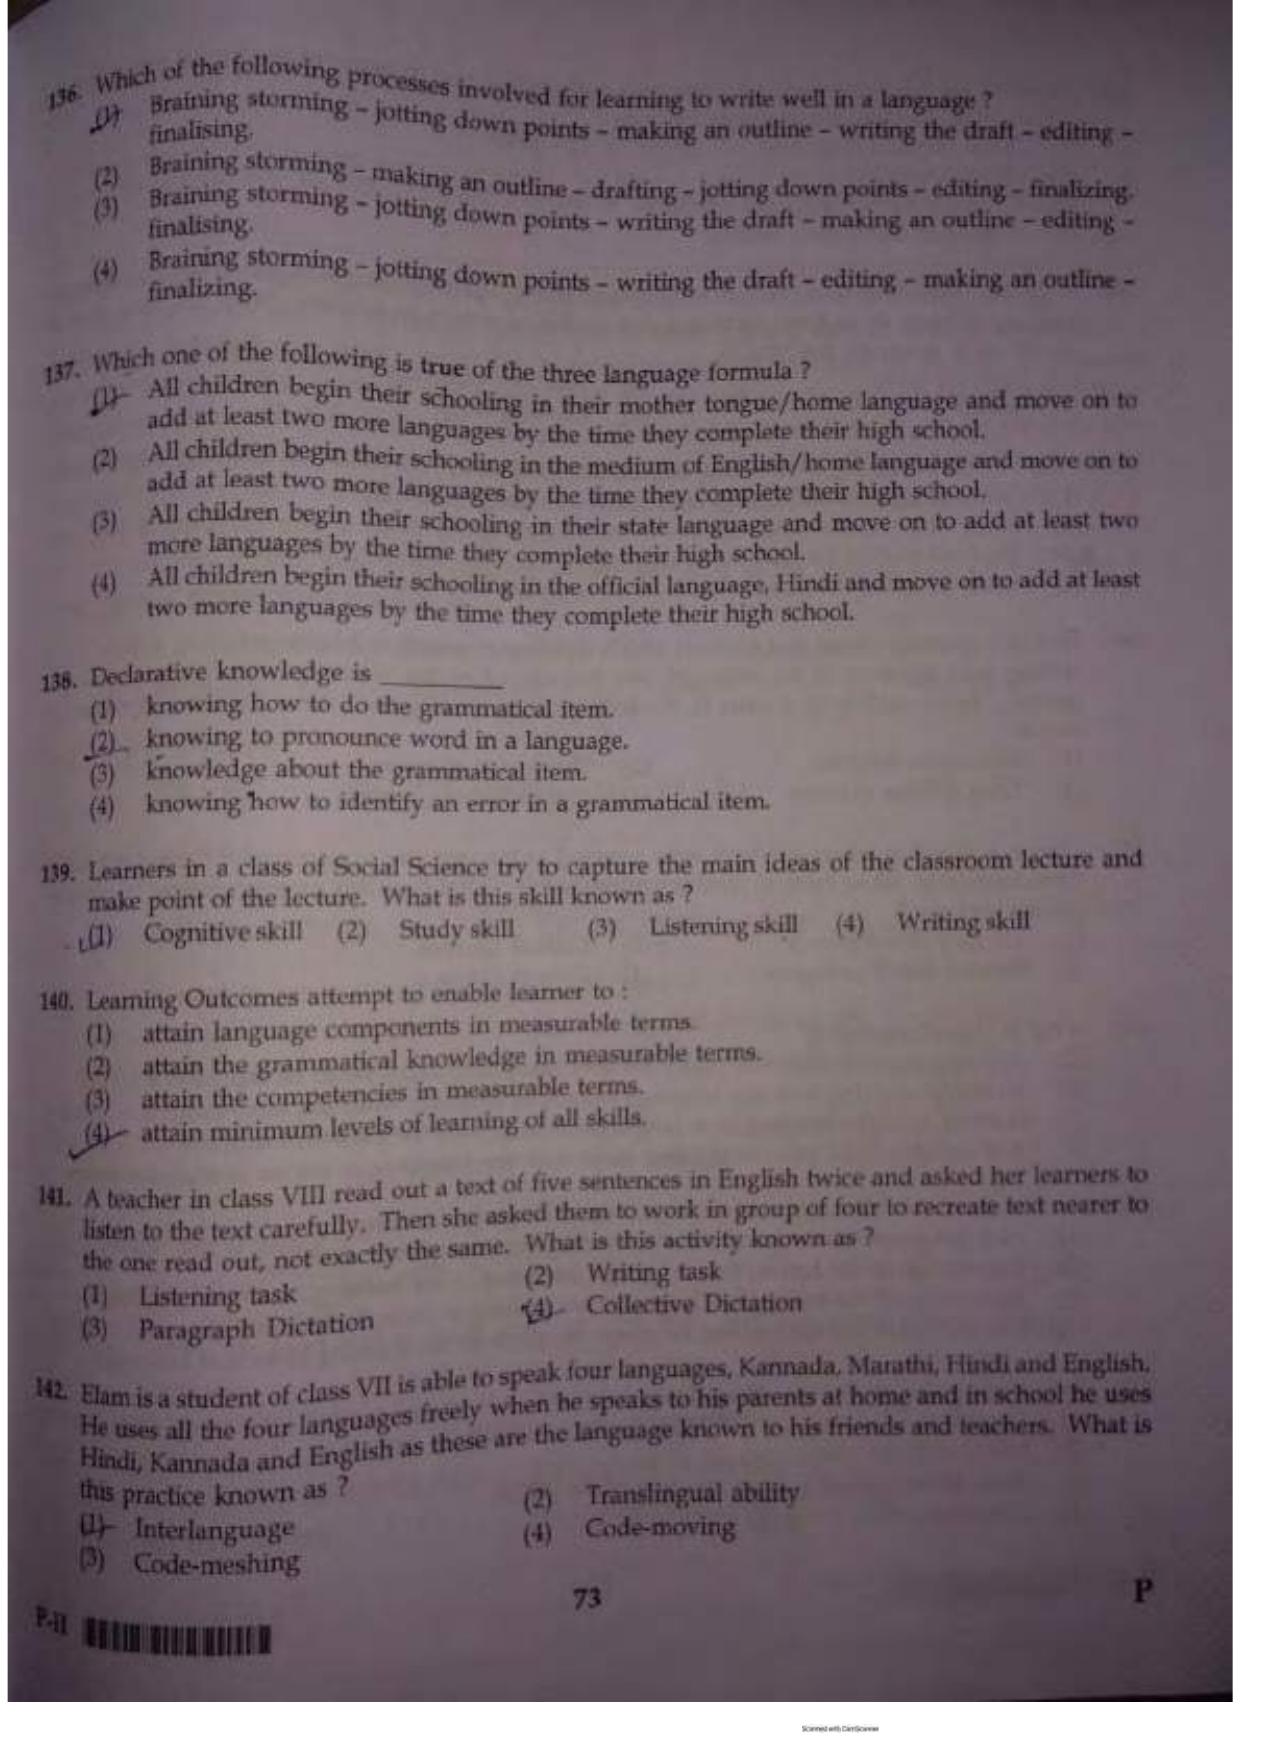 ctet paper 2 question paper SET P - Page 72